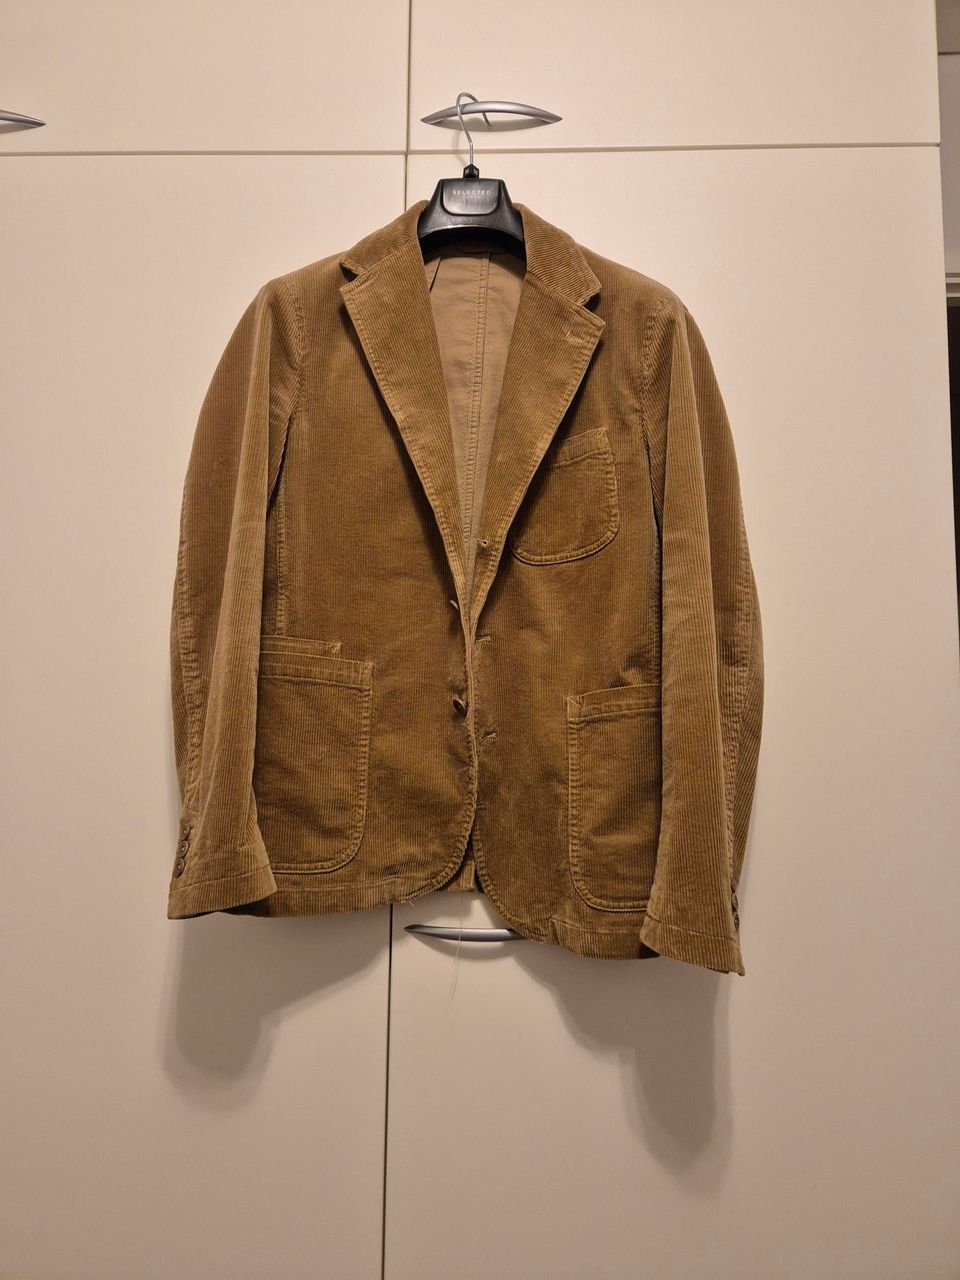 Polo Ralph Lauren sport coat